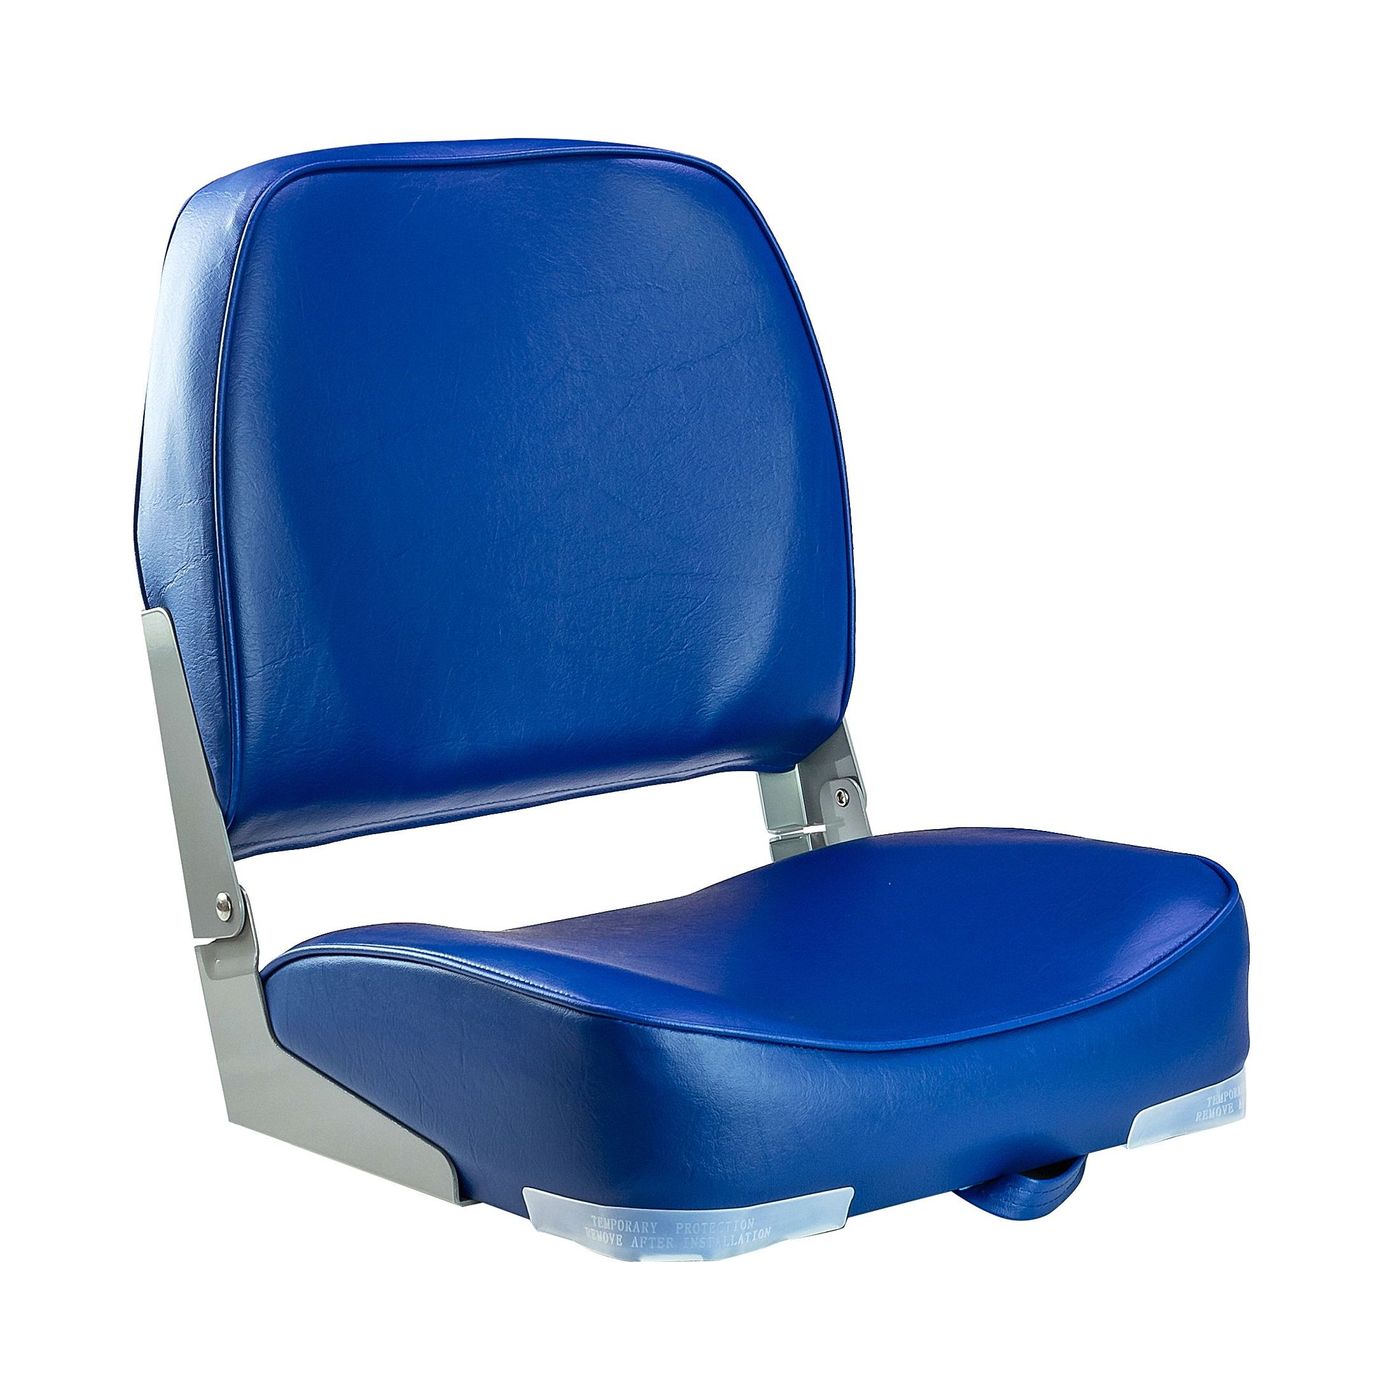 Кресло мягкое складное, обивка винил, цвет синий, Marine Rocket 75103B-MR кресло с болстером ocean flip up обивка белый синий винил 13127 mr